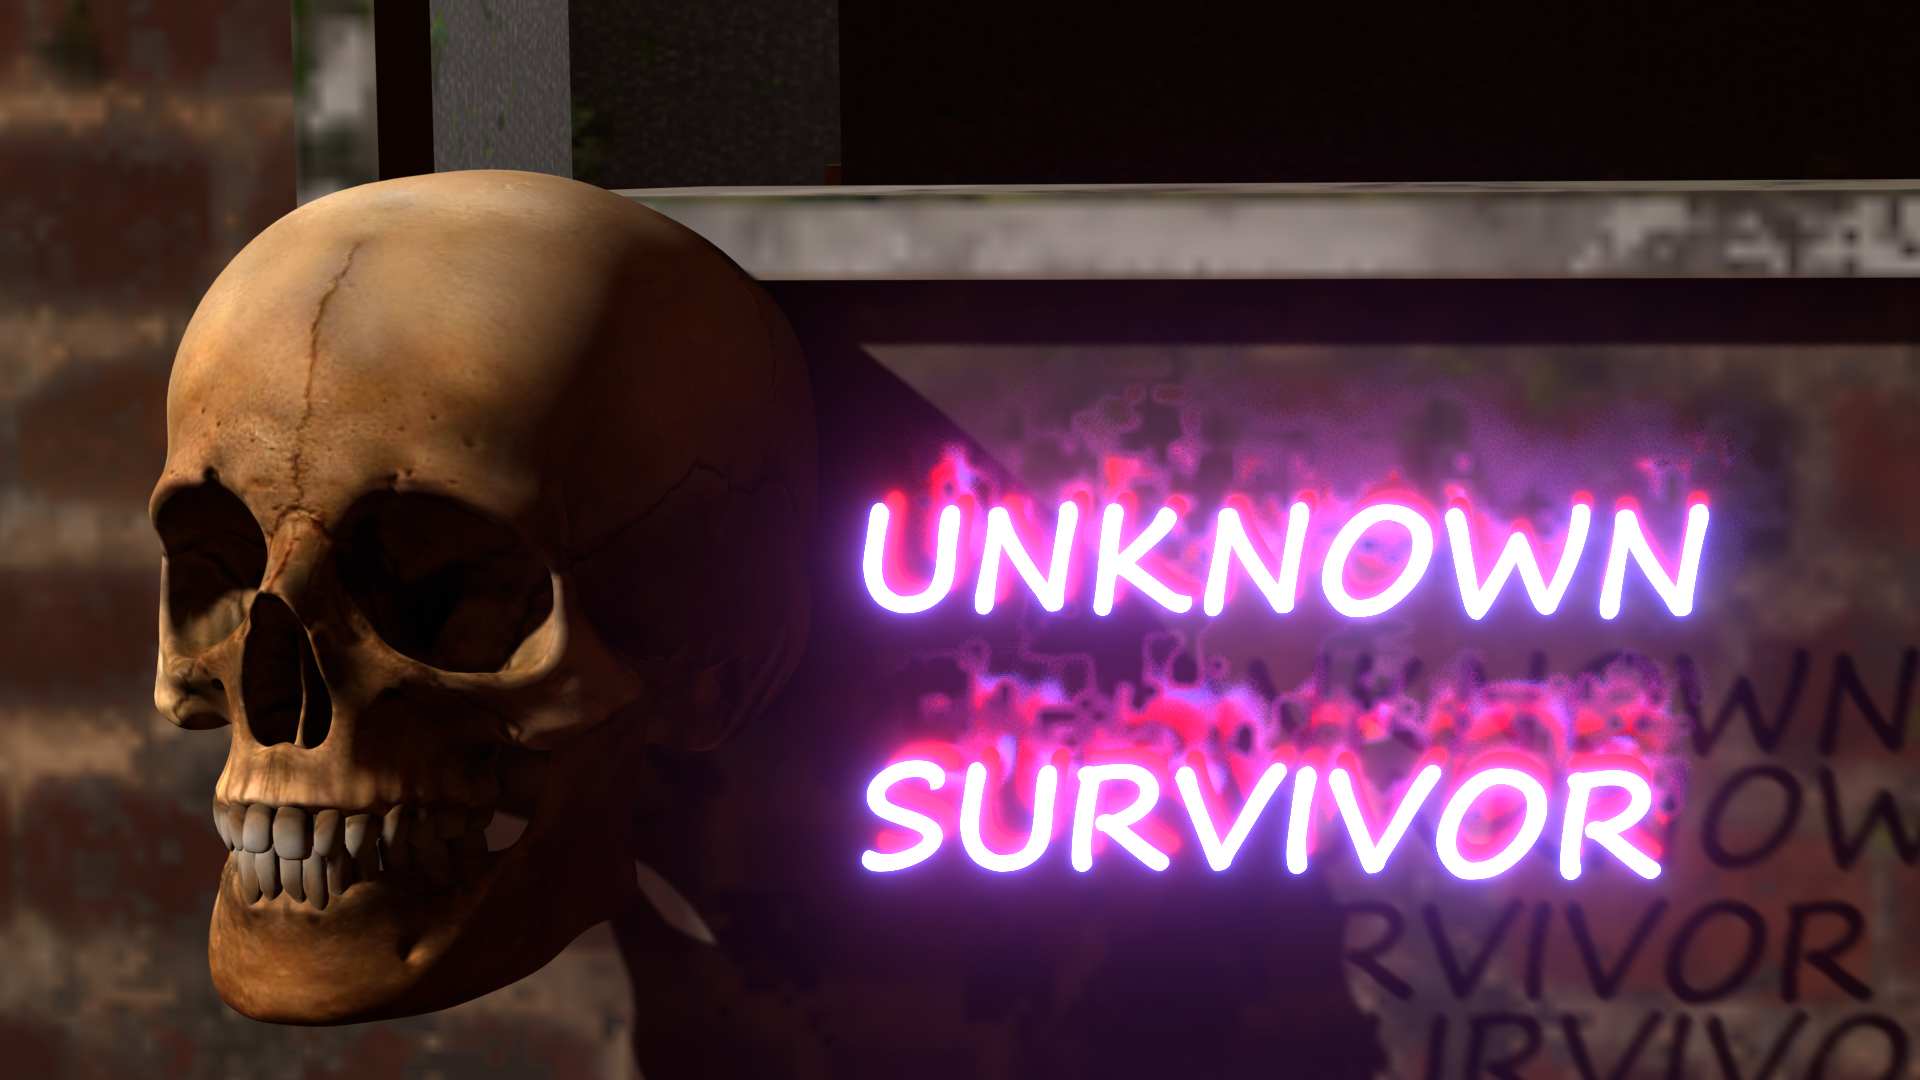 The unknown survivor